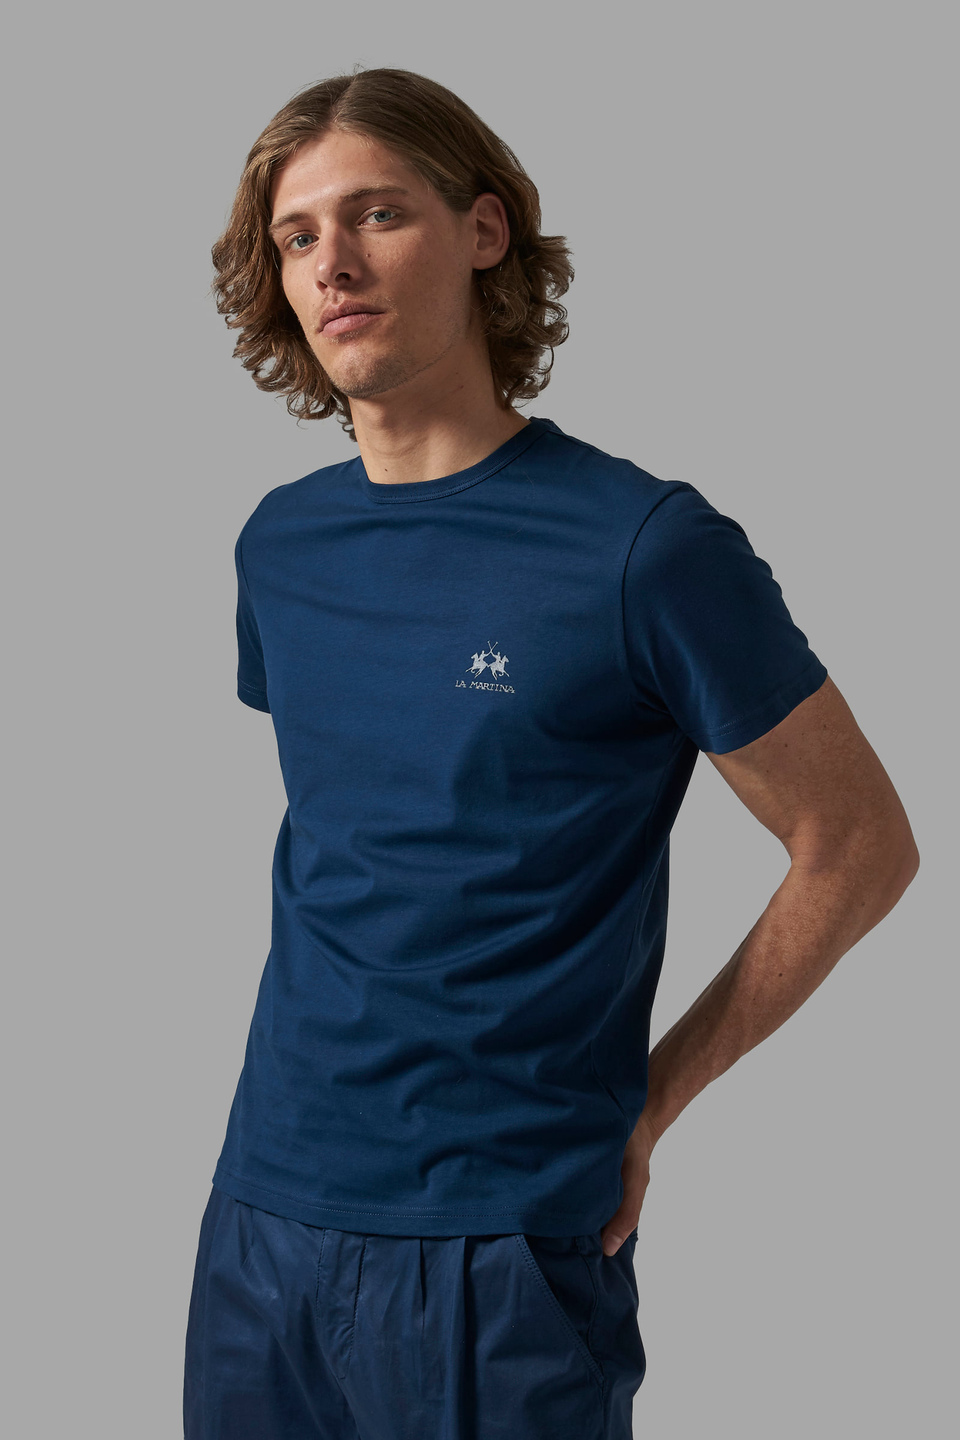 Men's regular-fit T-Shirt - La Martina - Official Online Shop